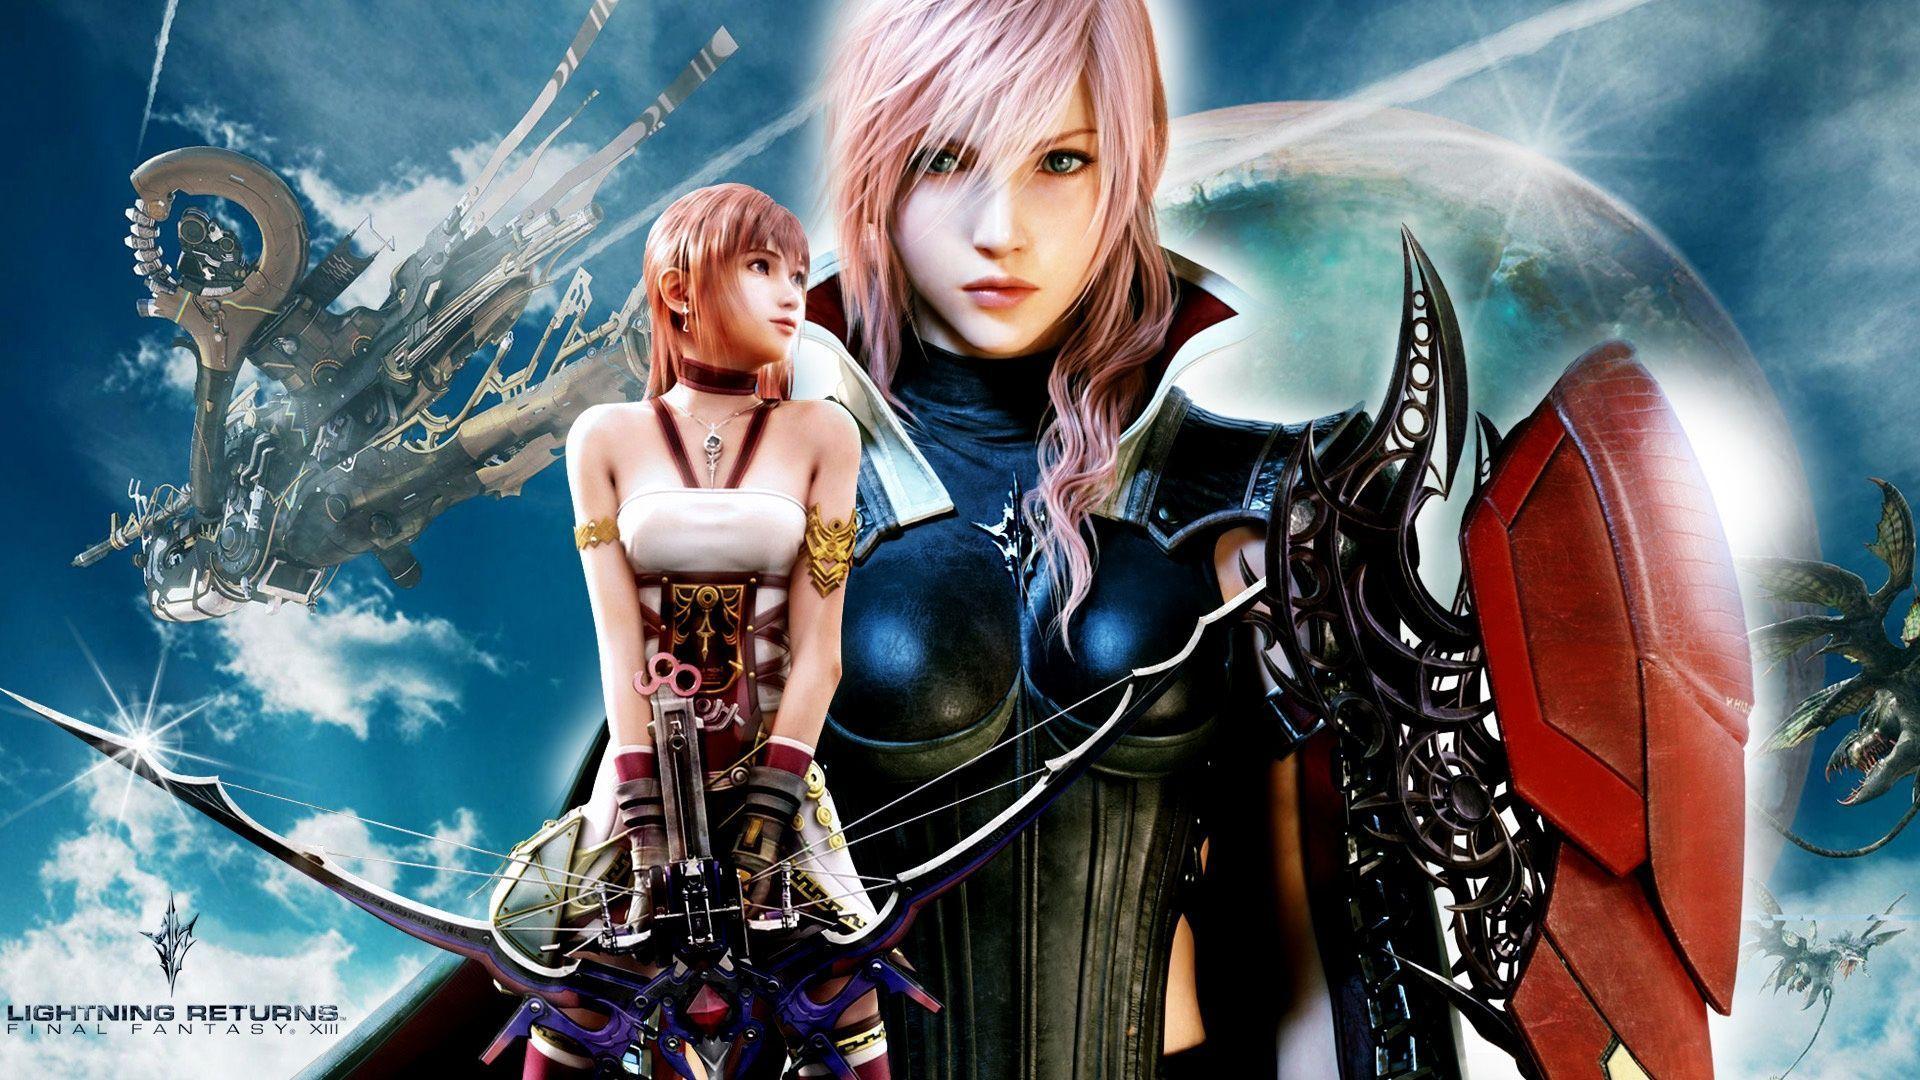 Final Fantasy XV HD Wallpaper Background Wallpaper. Lightning